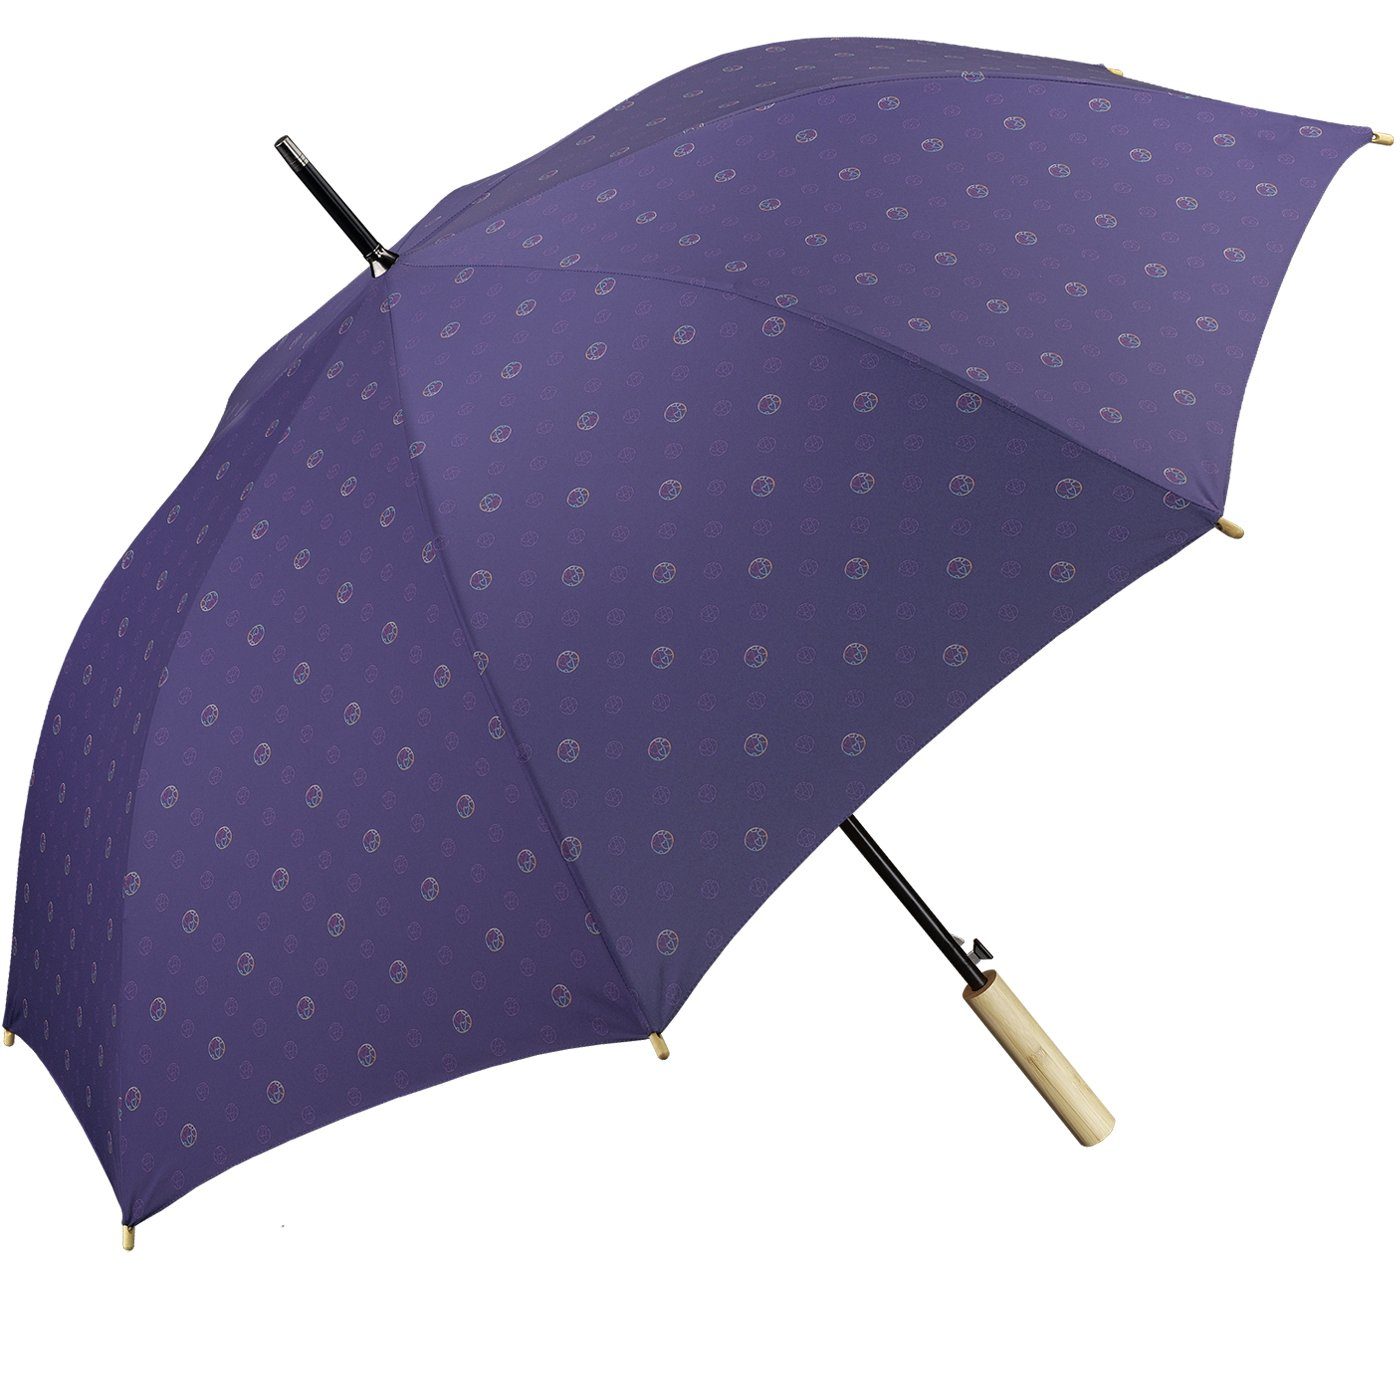 HAPPY RAIN Langregenschirm Automatik Allover, die geschützt für etwas Earth Umwelt gut Schirm tun World nachhaltiger